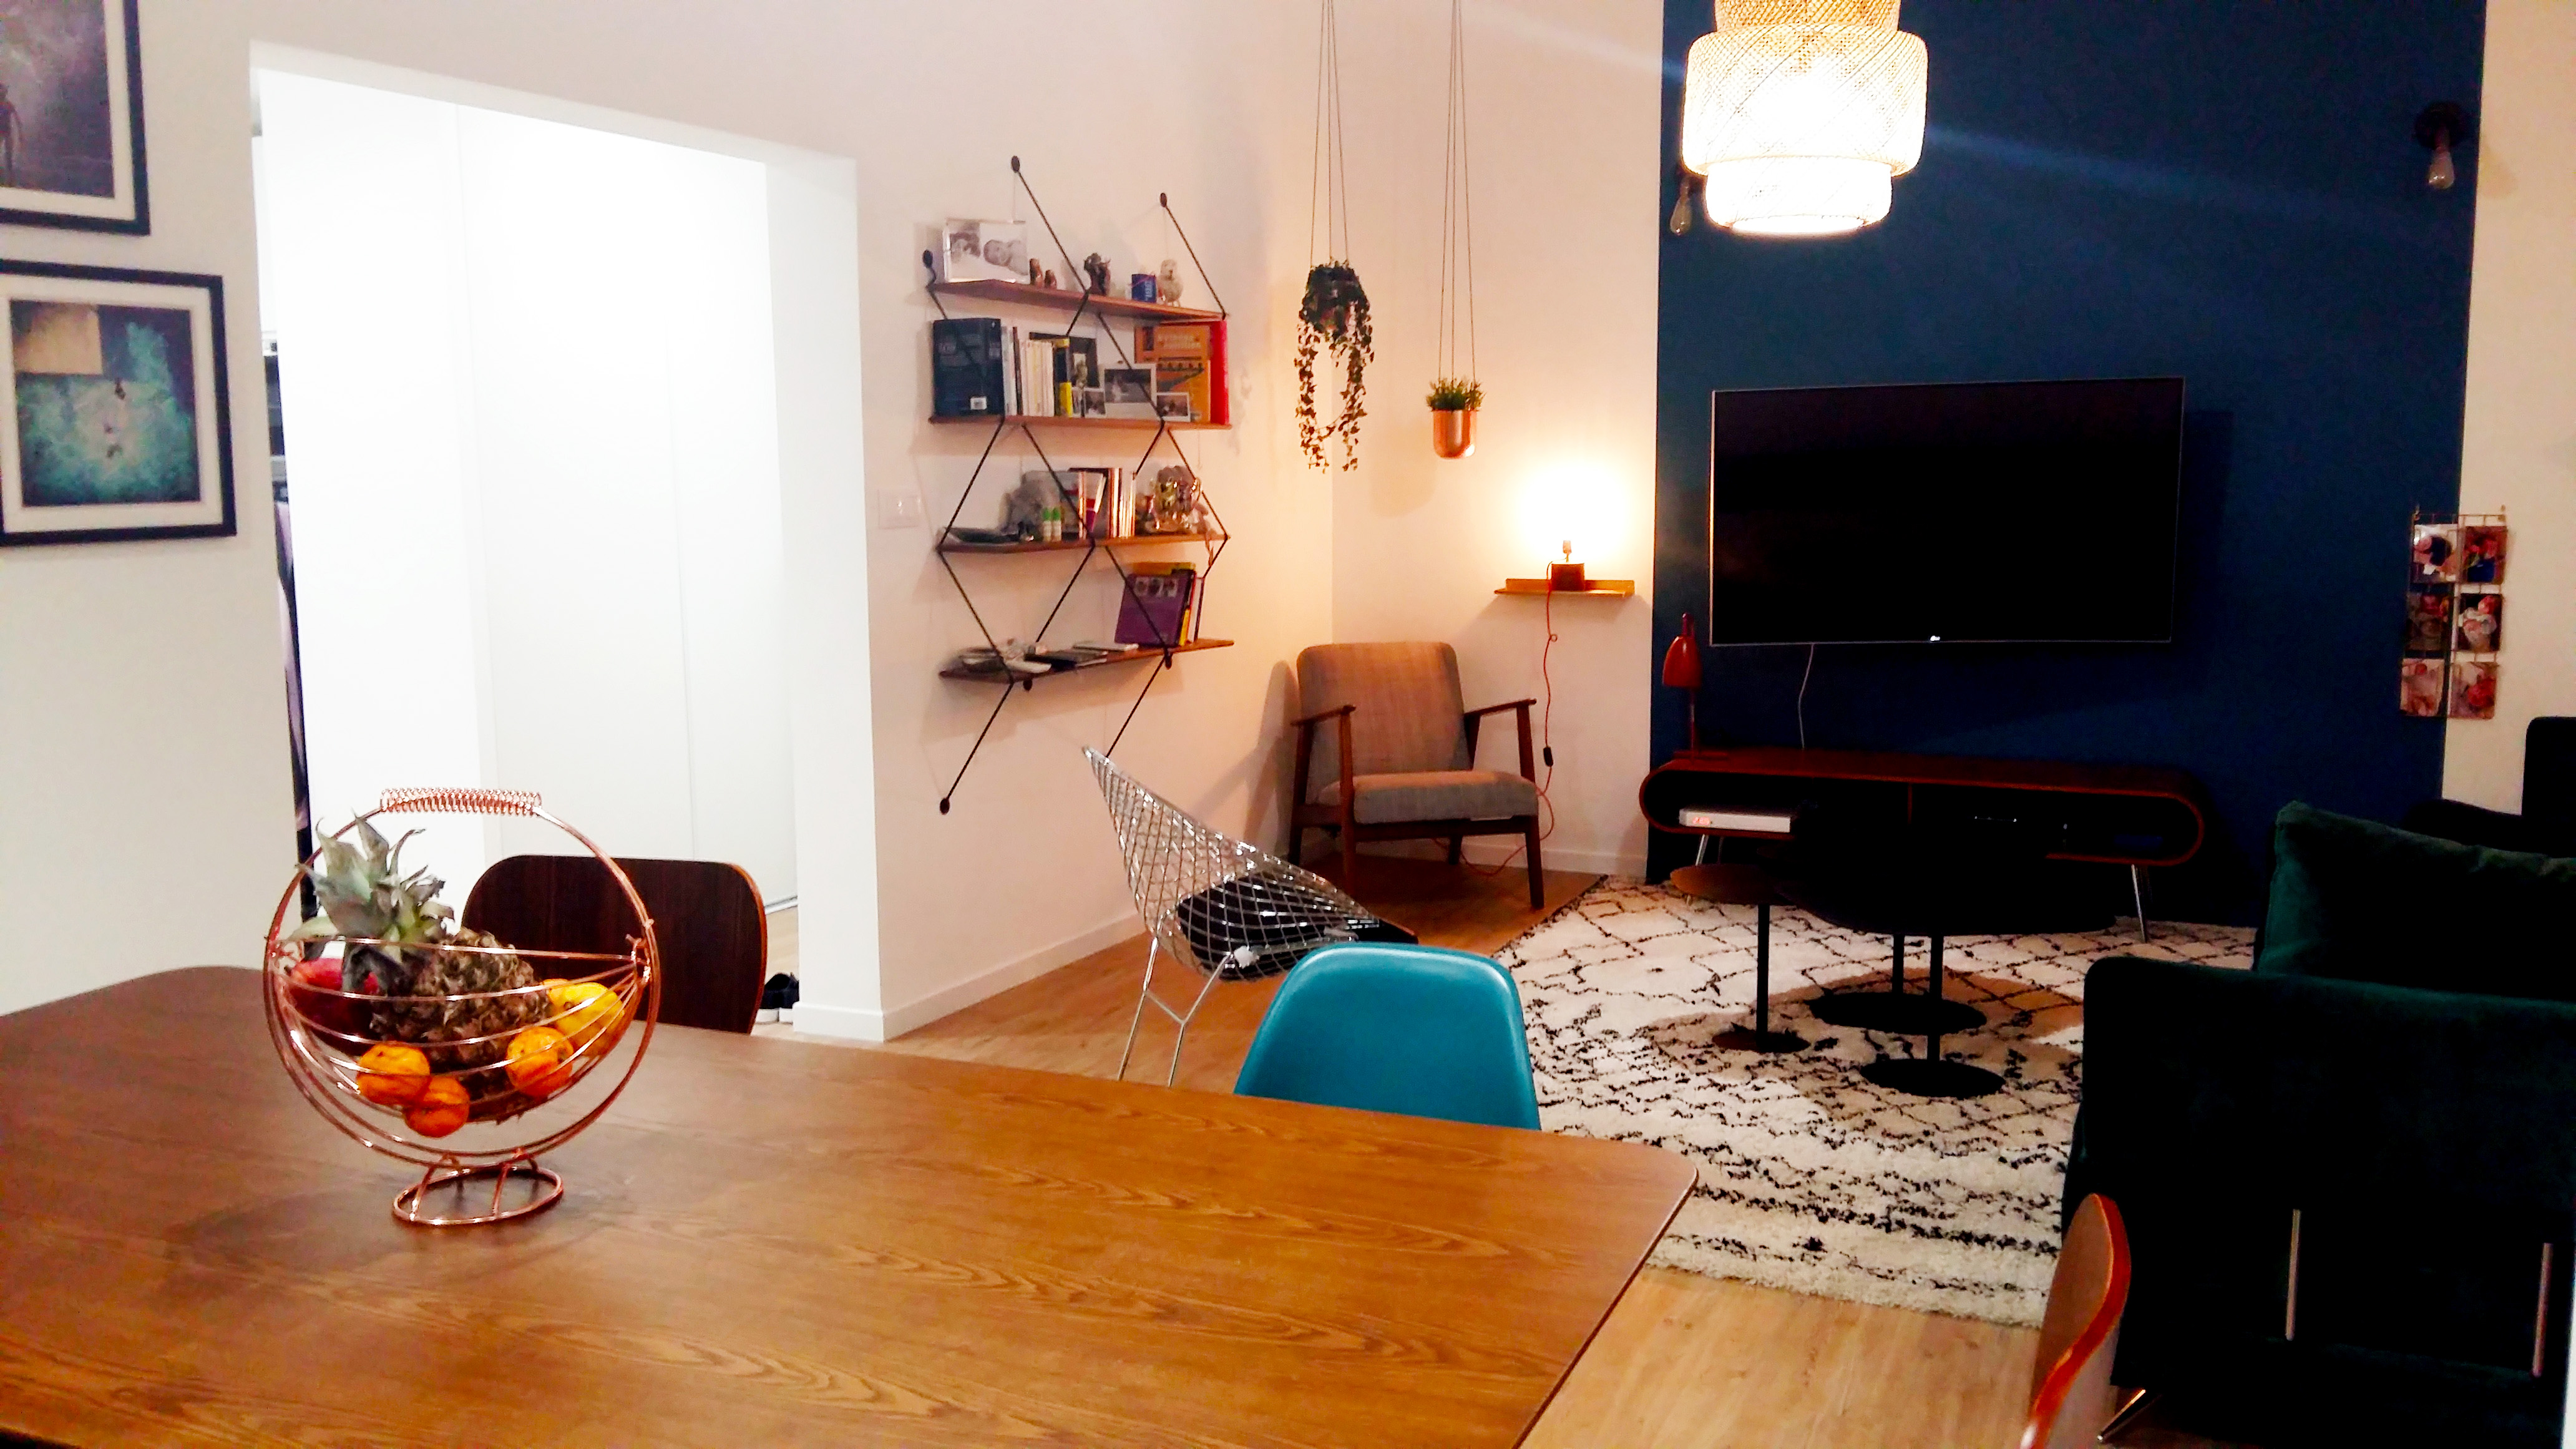 bibliothque la chance cadres noirs Salon salle à manger scandinave ethnique meubles années 50 bouc bel air décoration d'intérieur Marseille Coralie Aubert